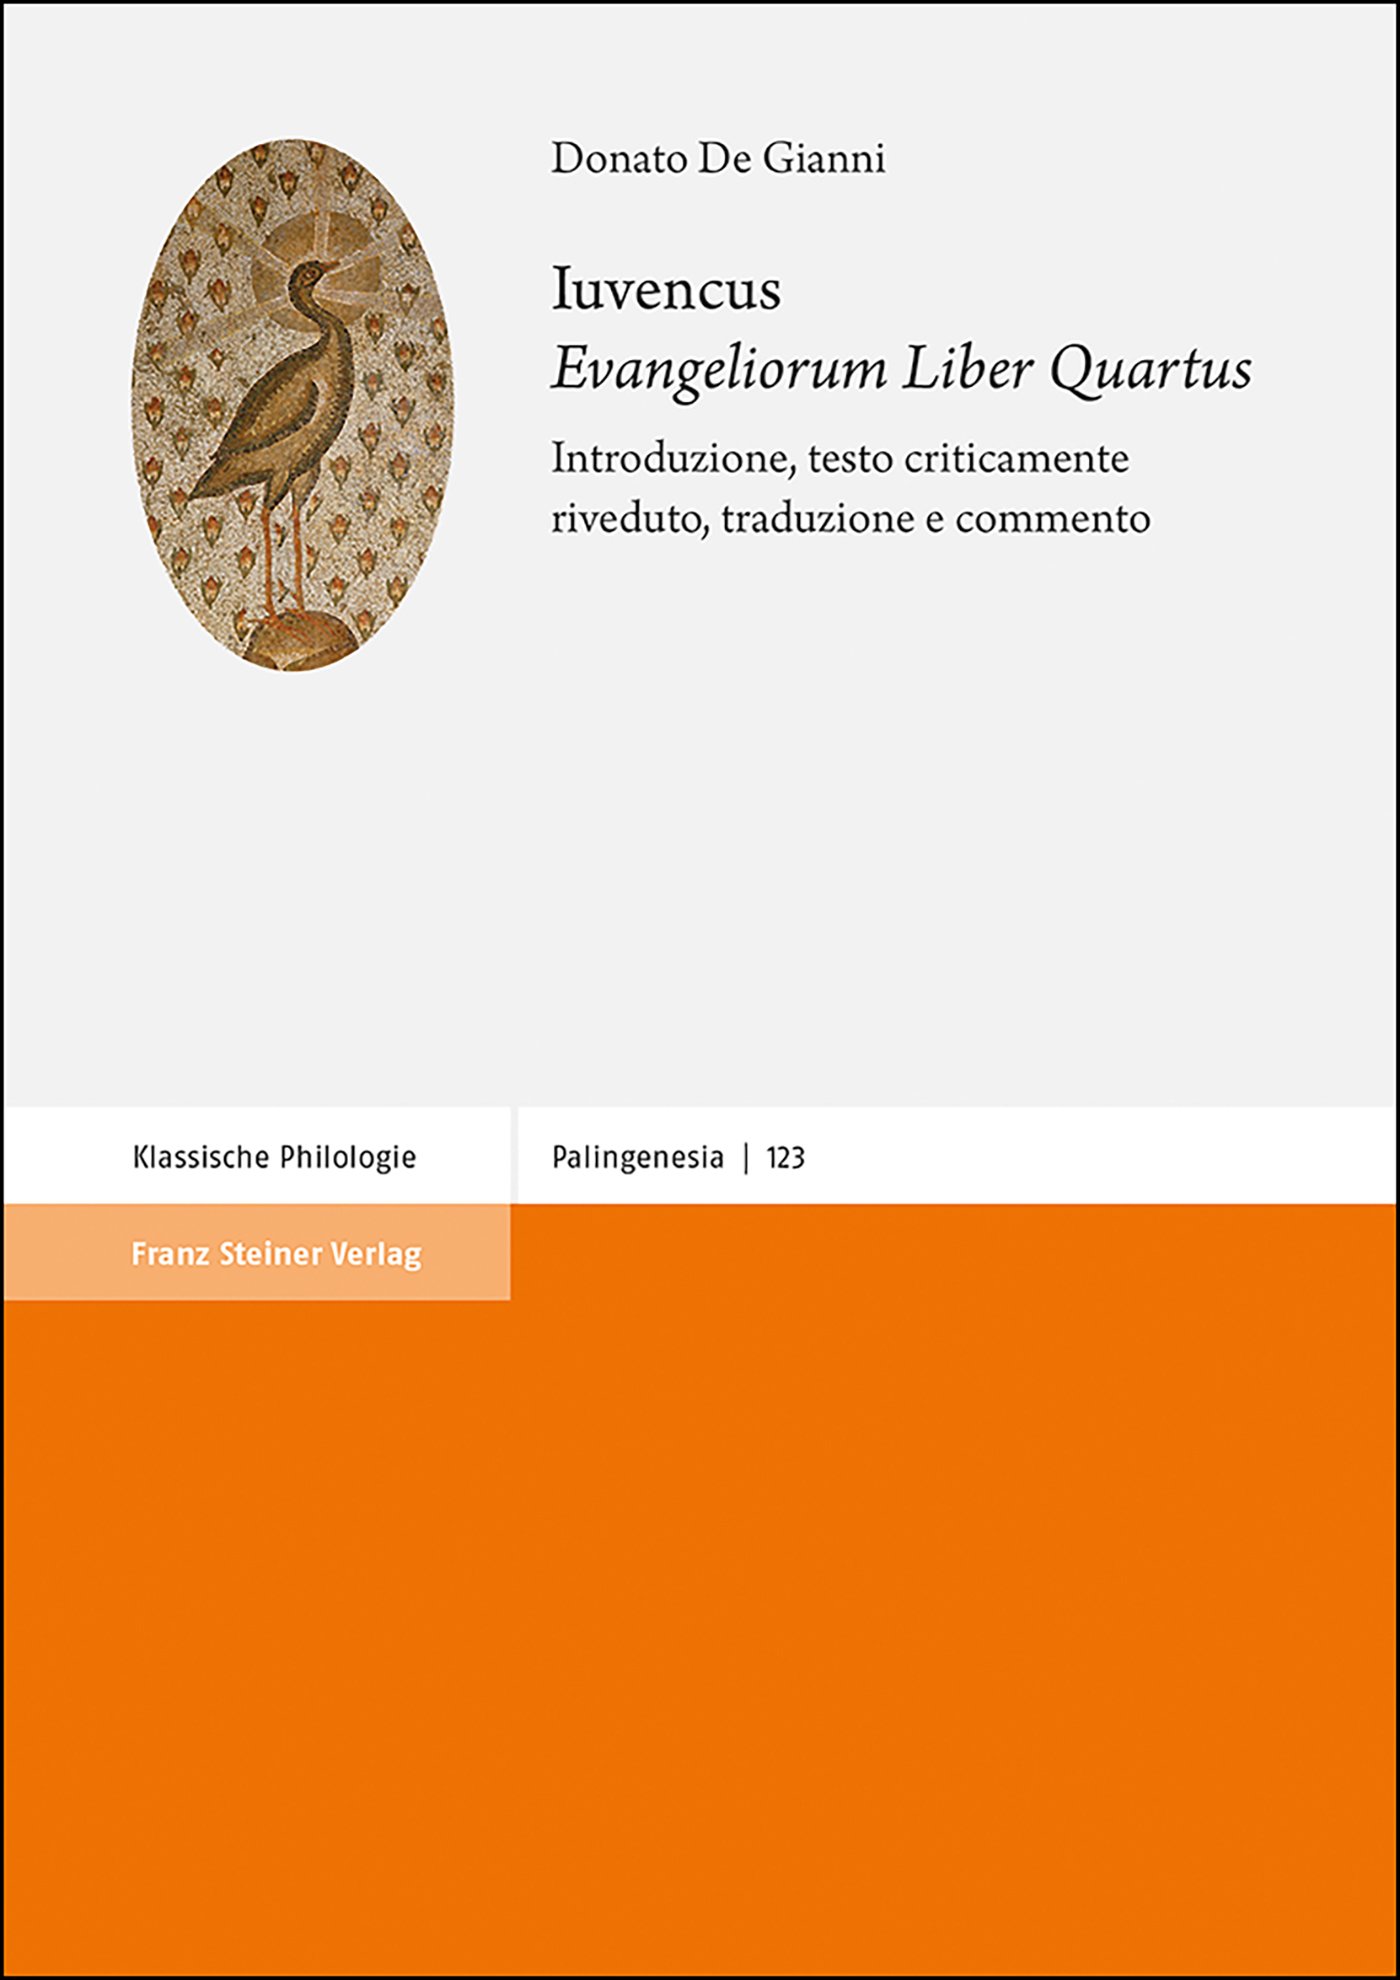 Iuvencus: "Evangeliorum Liber Quartus"